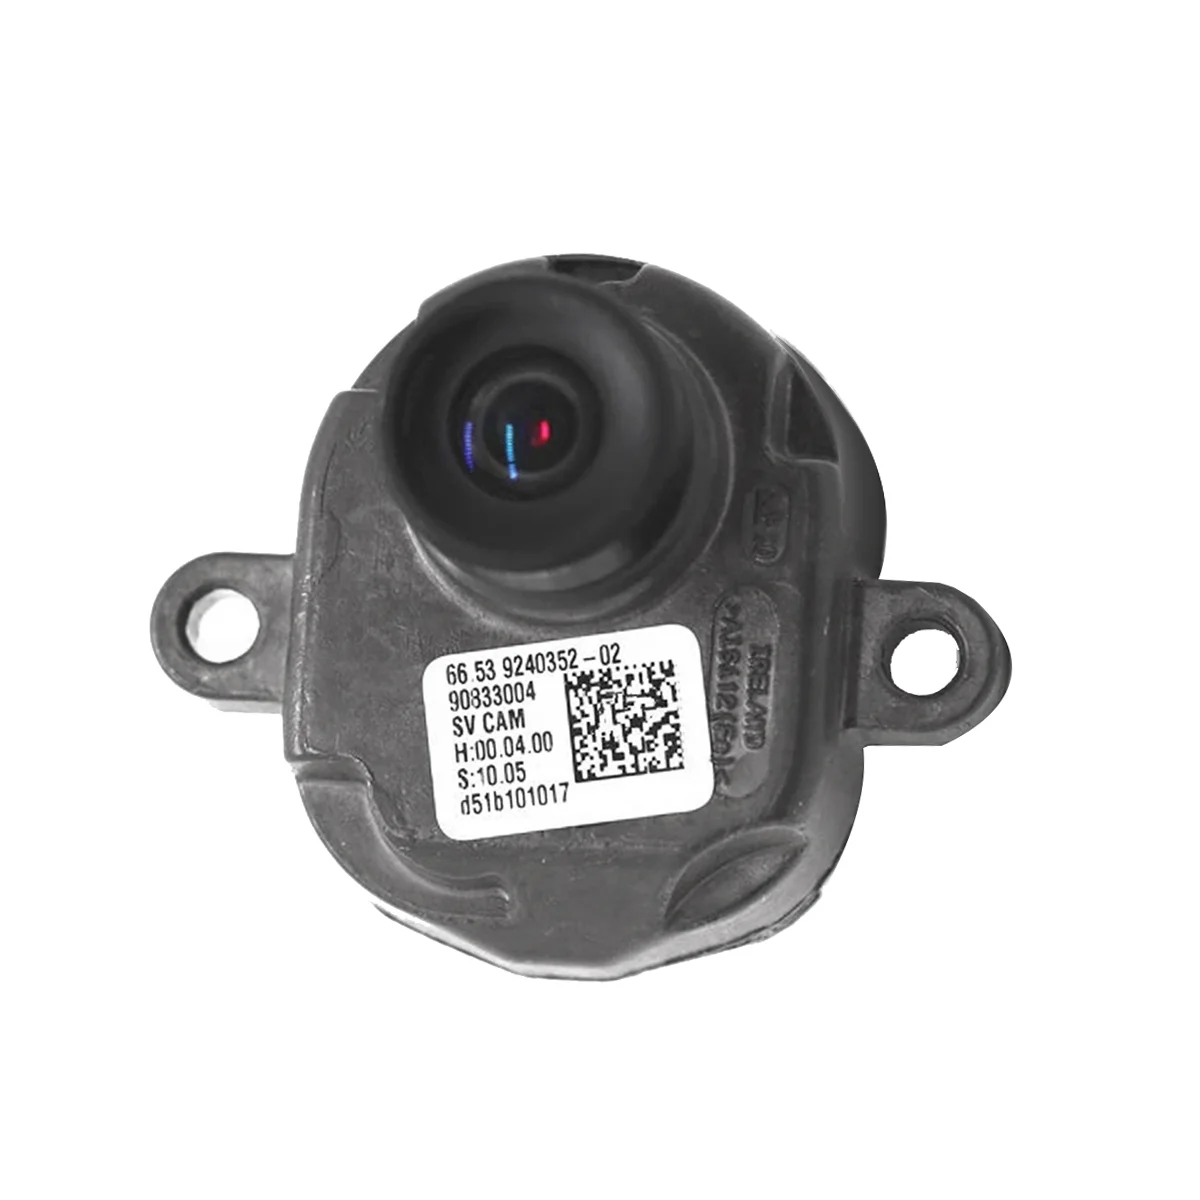 66539240352-02 Резервная Камера Заднего вида Правого Переднего бампера Сбоку для X5 E70 X6 E71 F01 F02 F06 F07 F10 F11 F12